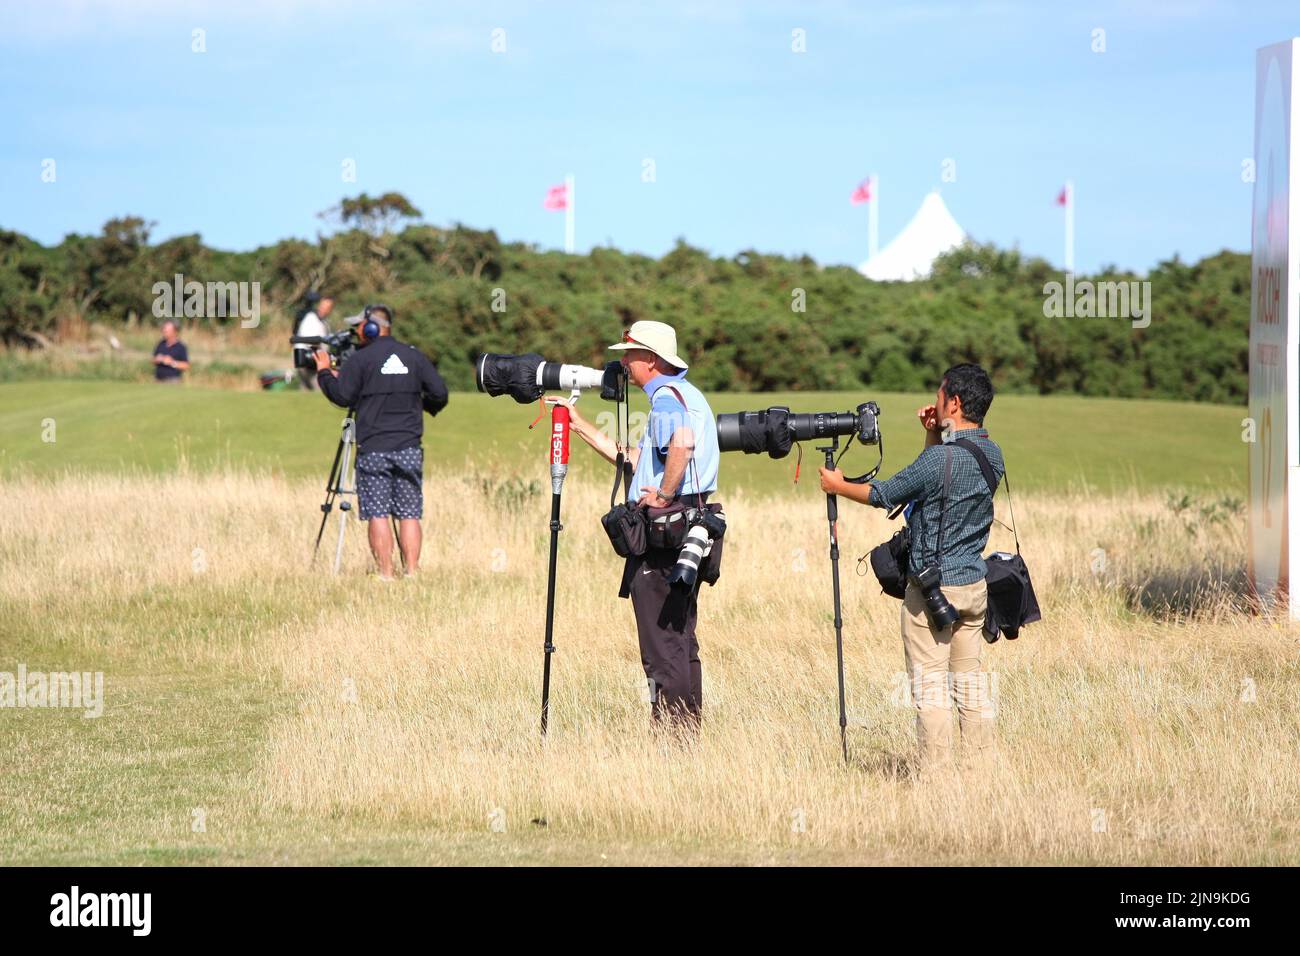 Le légendaire photographe de golf David Cannon sur le 12th trous lors de la dernière ronde de l'Open britannique féminin de Ricoh 2013 qui s'est tenue au St Andrews Old course sur Augus Banque D'Images